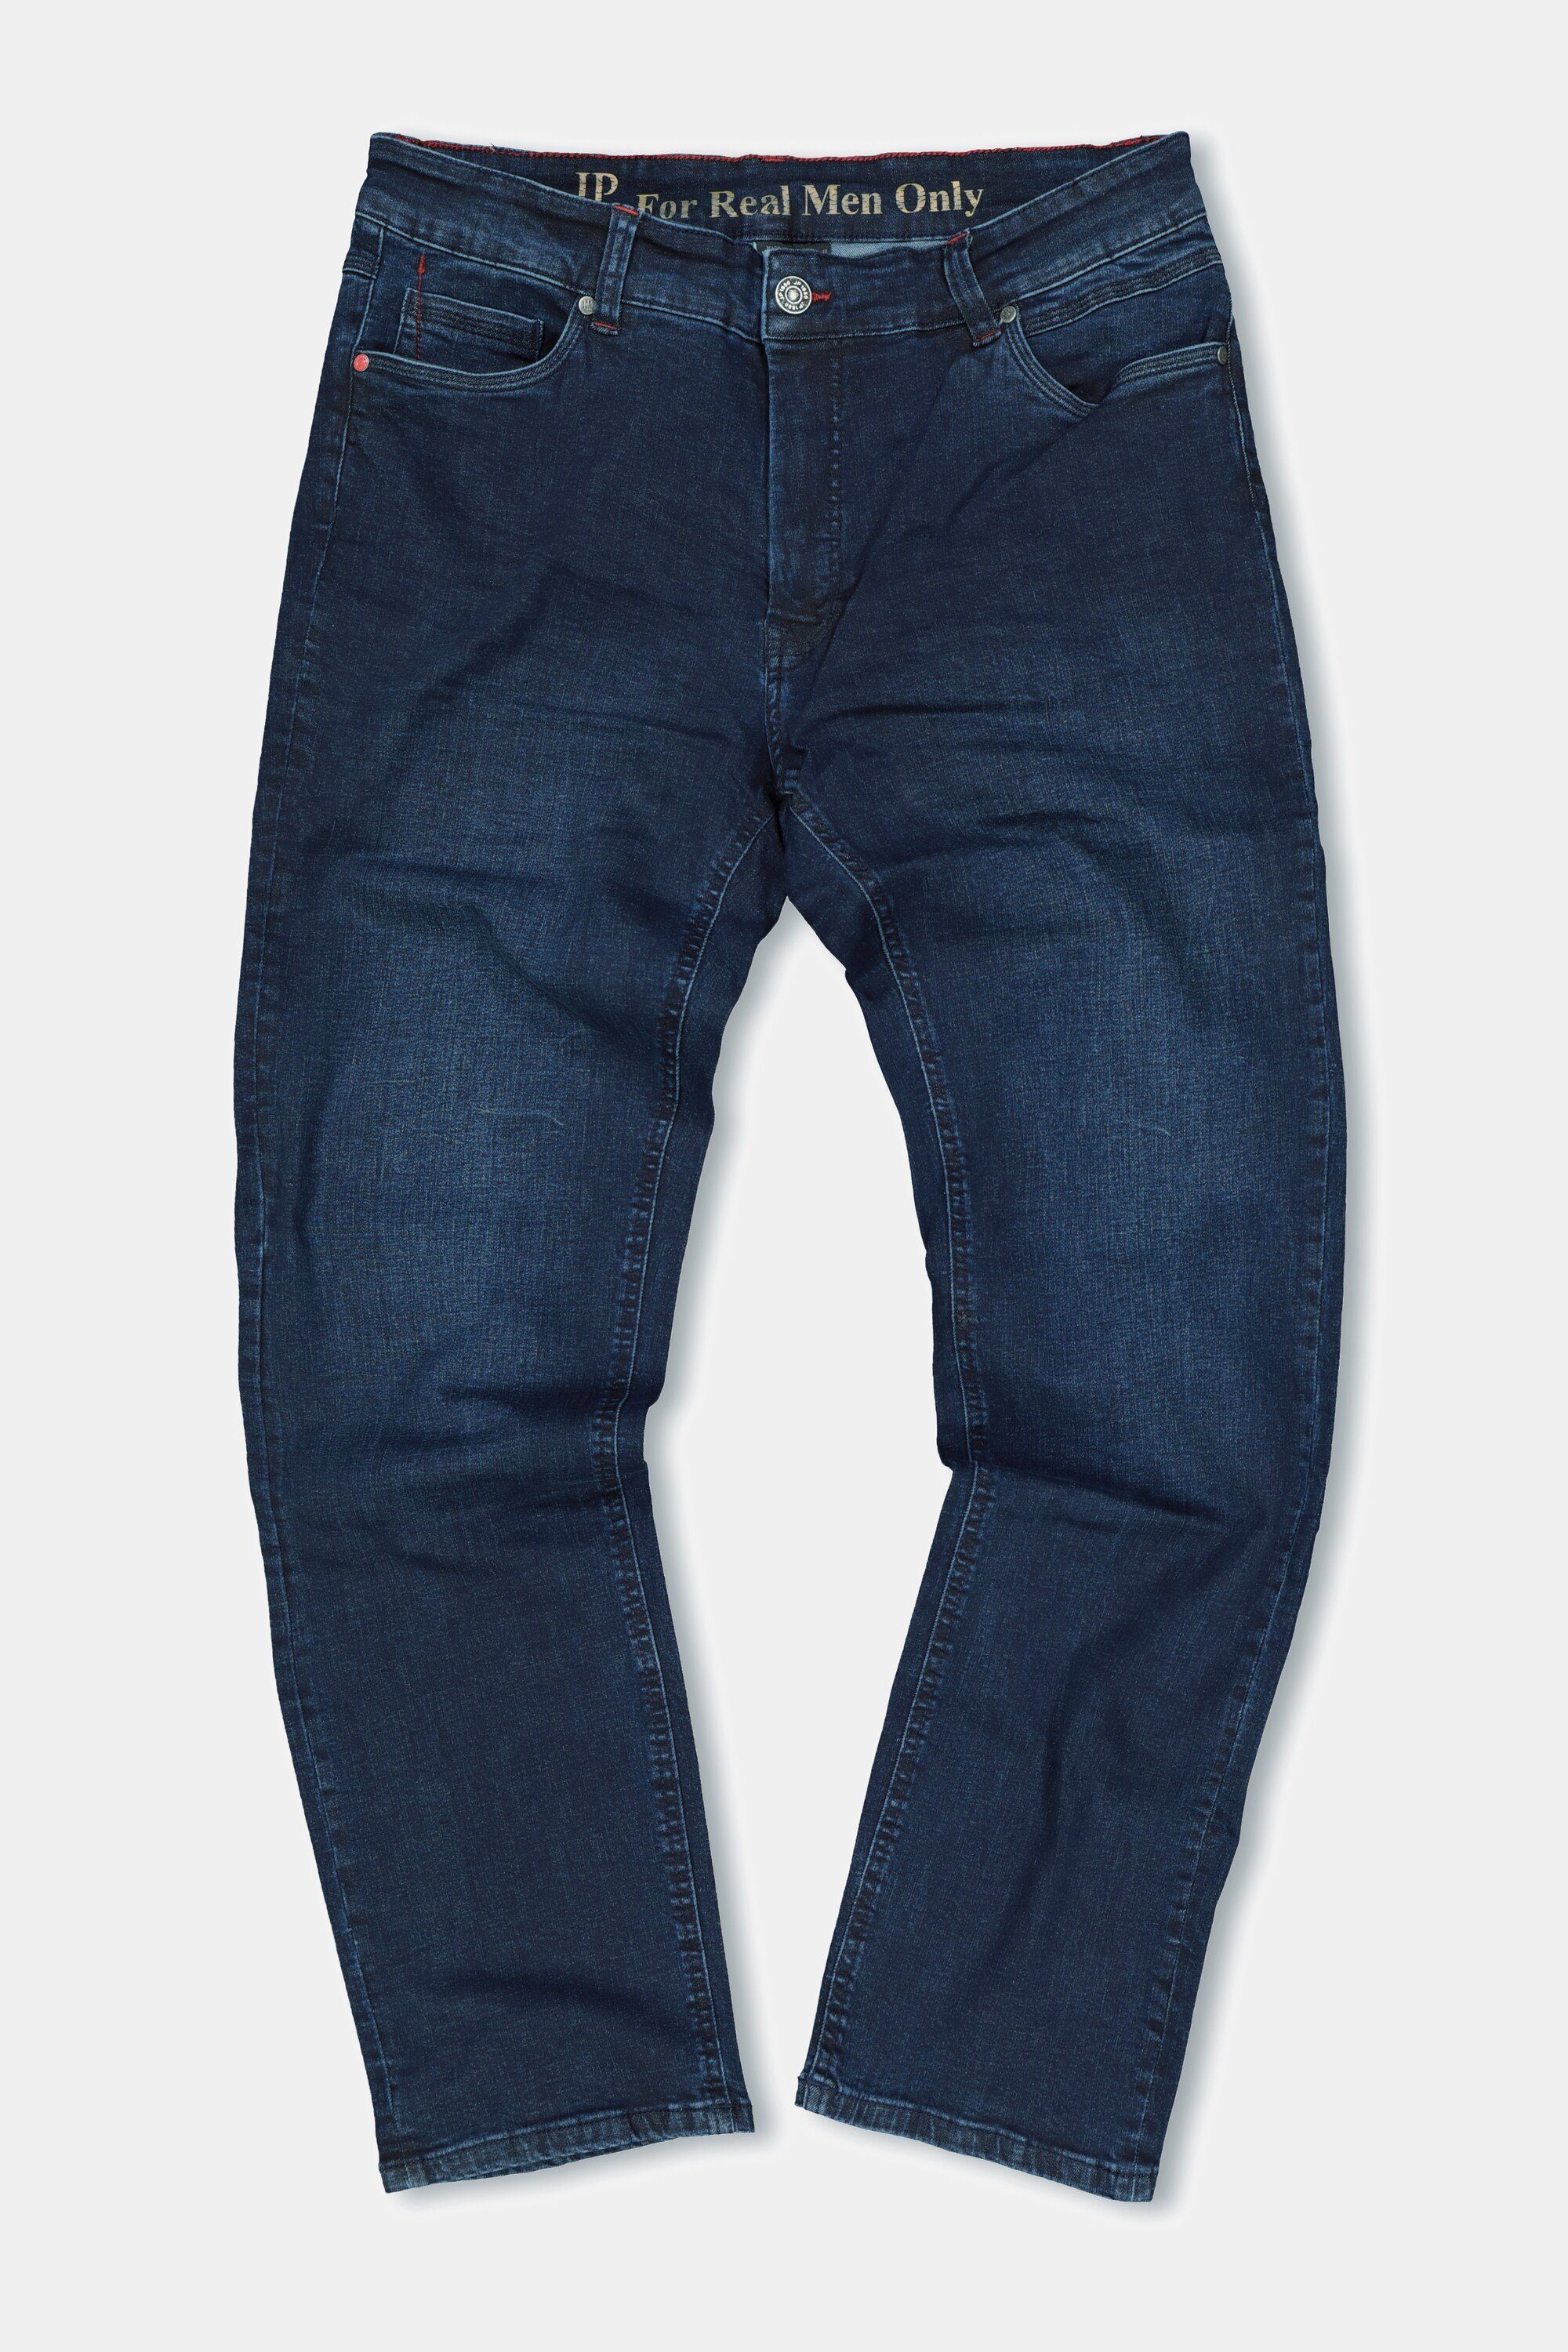 JP1880 denim Gr. bis Straight 70/35 dark FLEXNAMIC® 5-Pocket-Jeans Jeans Denim Fit blue